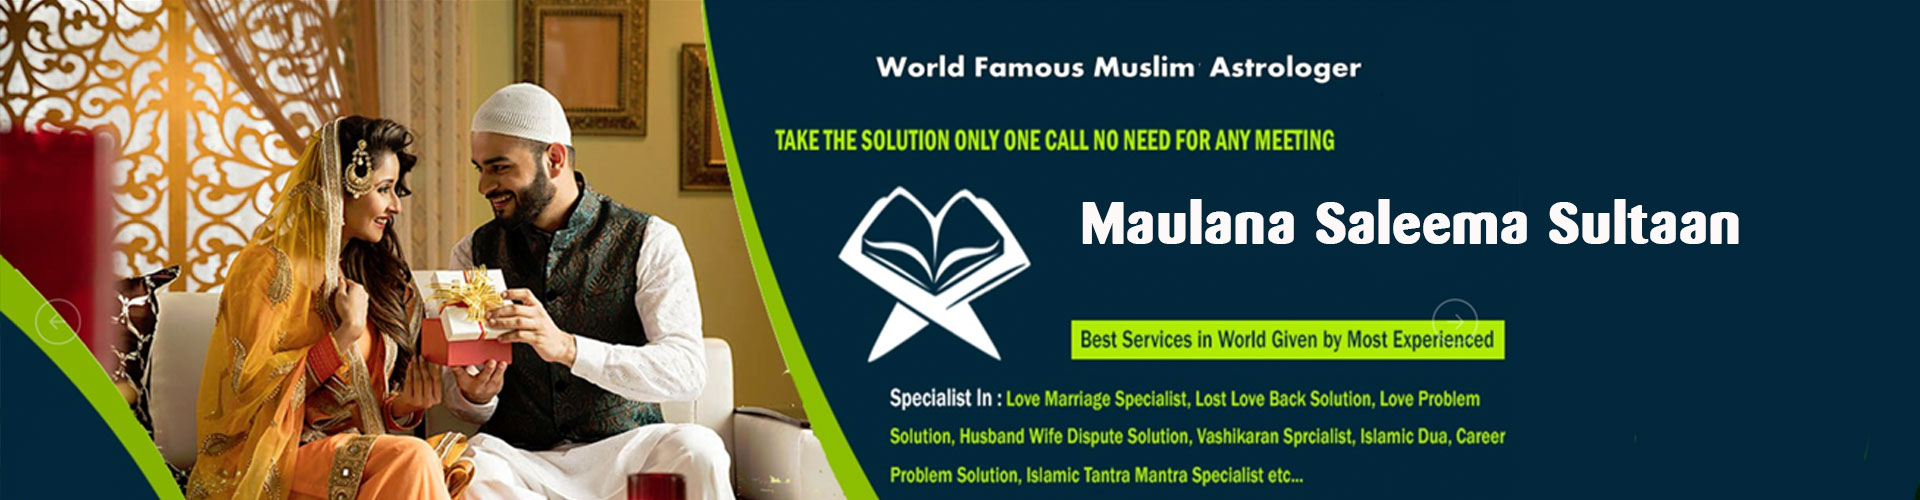 Muslim-Astrologer-Love-Problem-Solutions-online